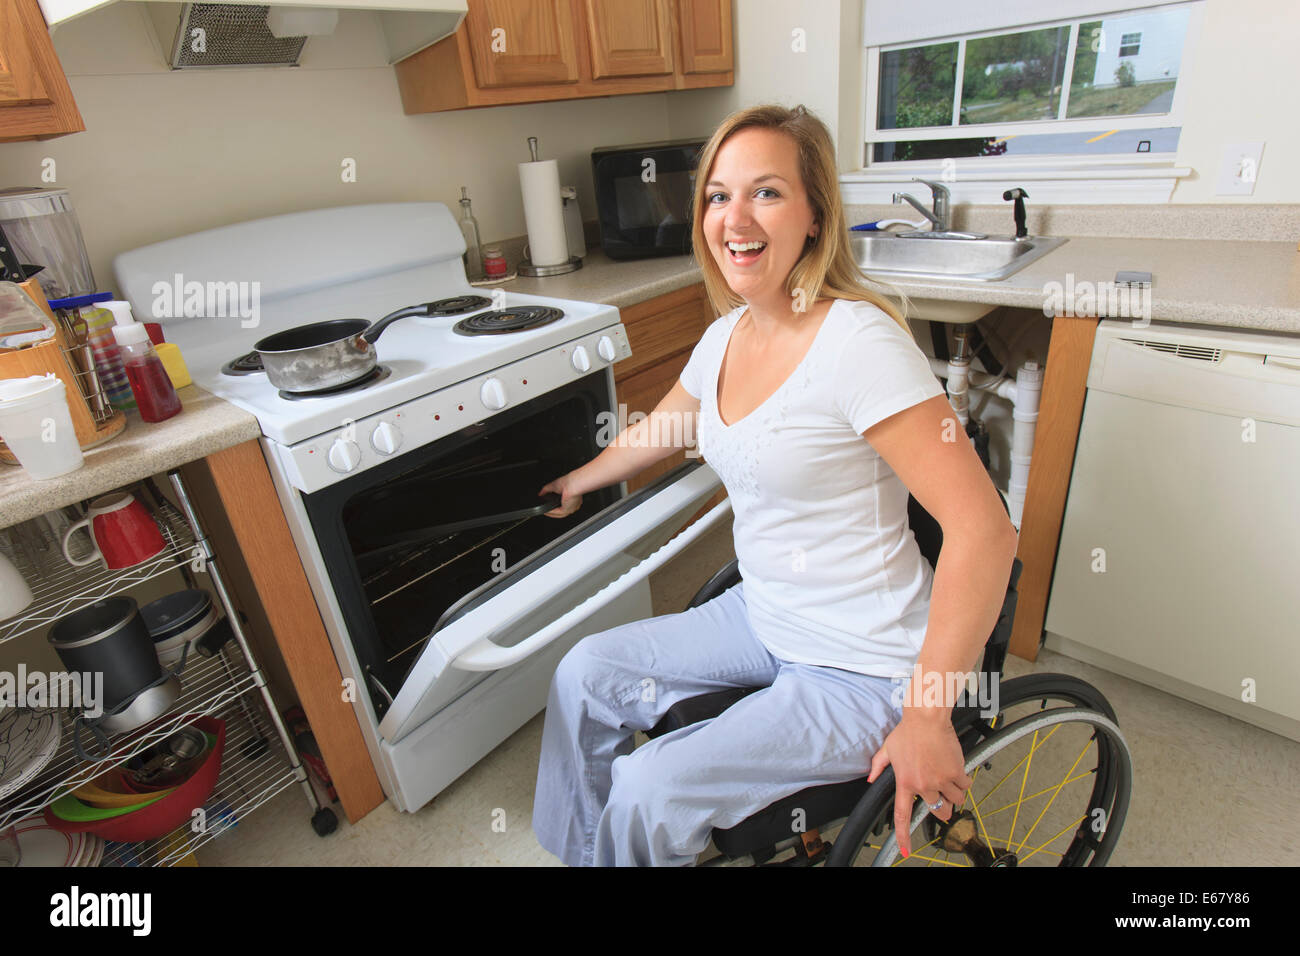 Femme avec de la moelle épinière dans sa cuisine accessible à l'aide d'une cuisinière Banque D'Images